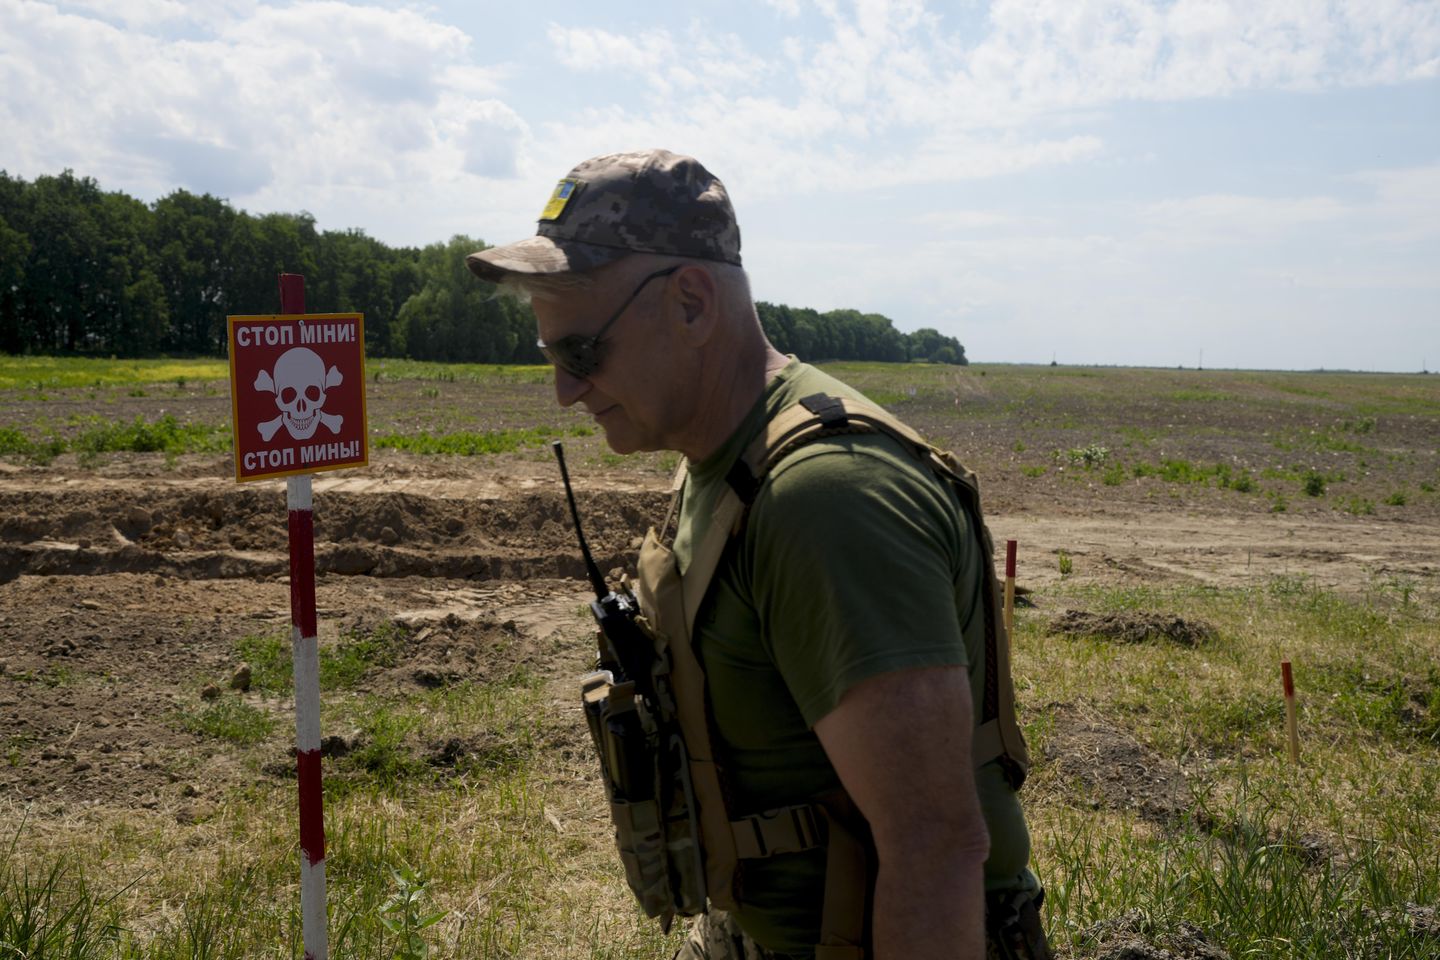 İngiliz yetkililer, Rusya'nın Ukrayna'da Sovyet döneminden kalma mayınları kullanma olasılığının yüksek olduğunu söylüyor